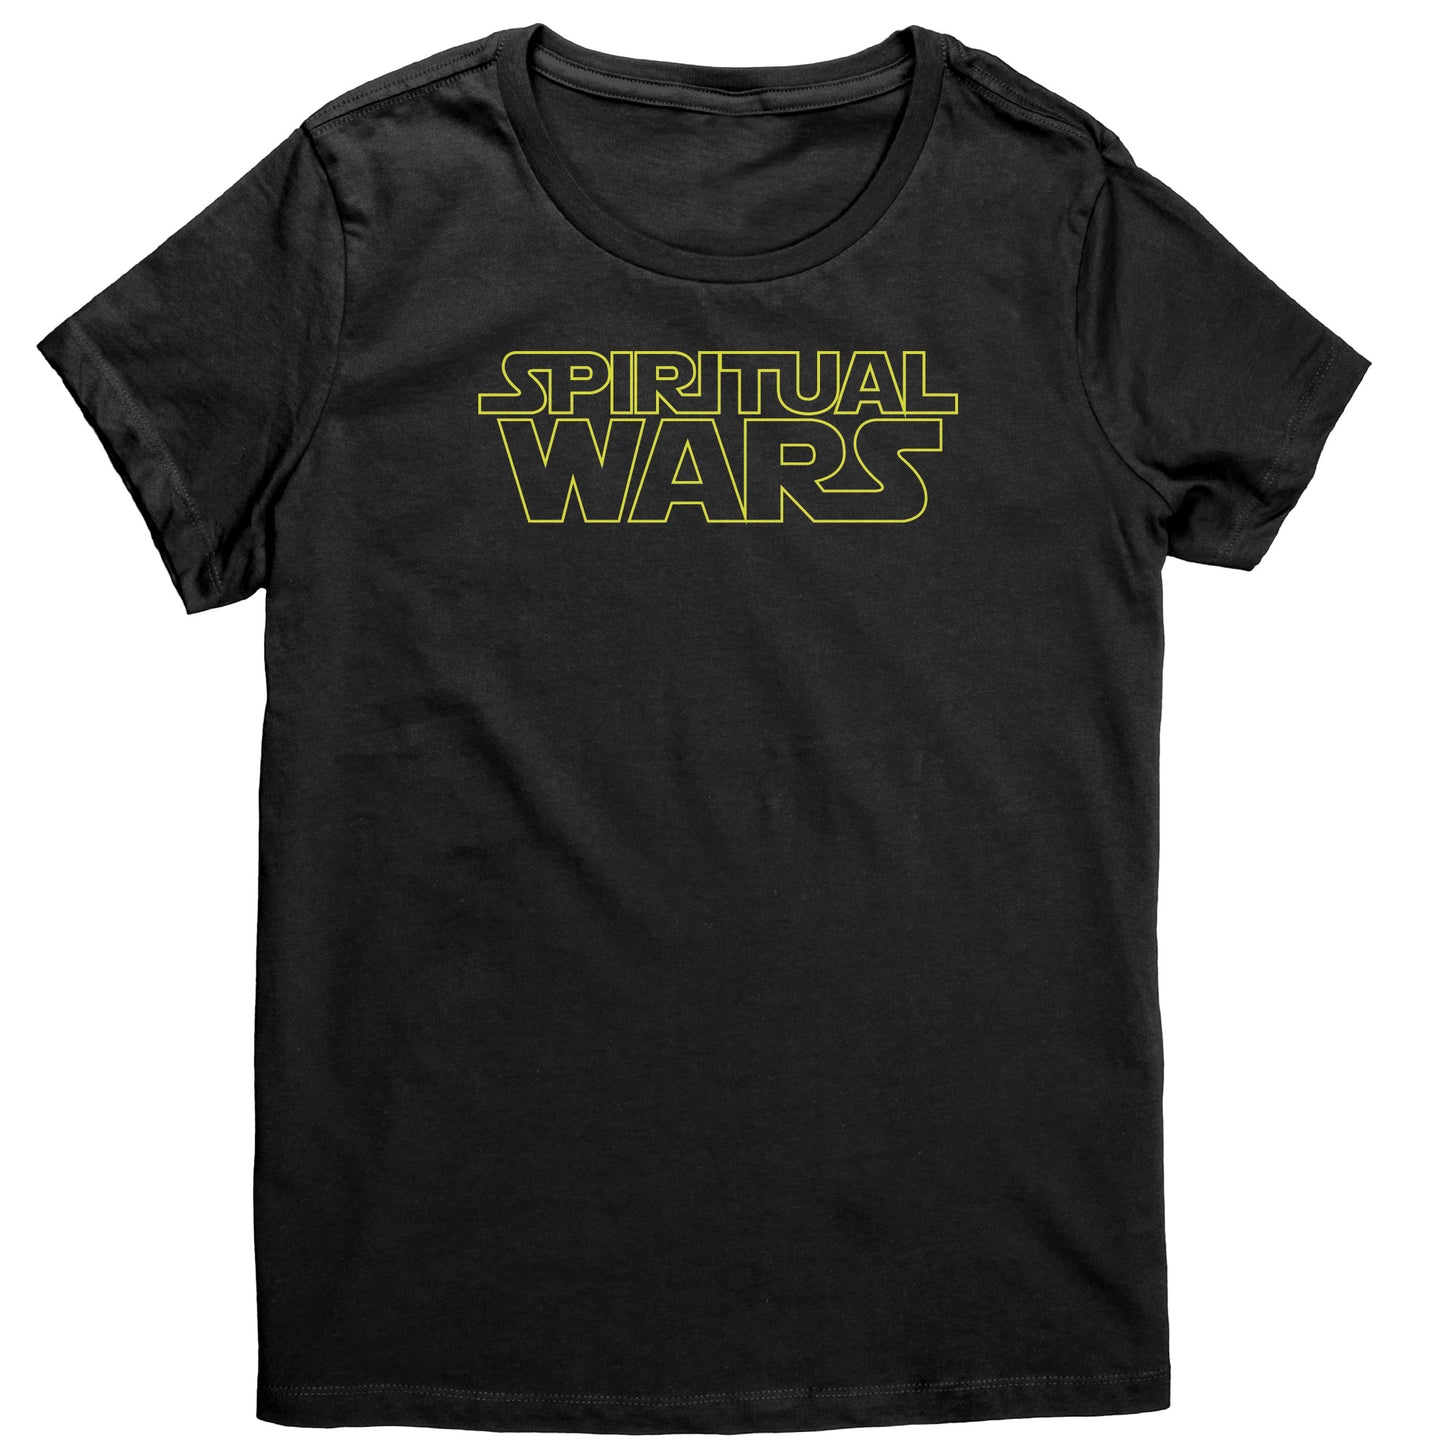 Spiritual Wars Women's T-Shirt